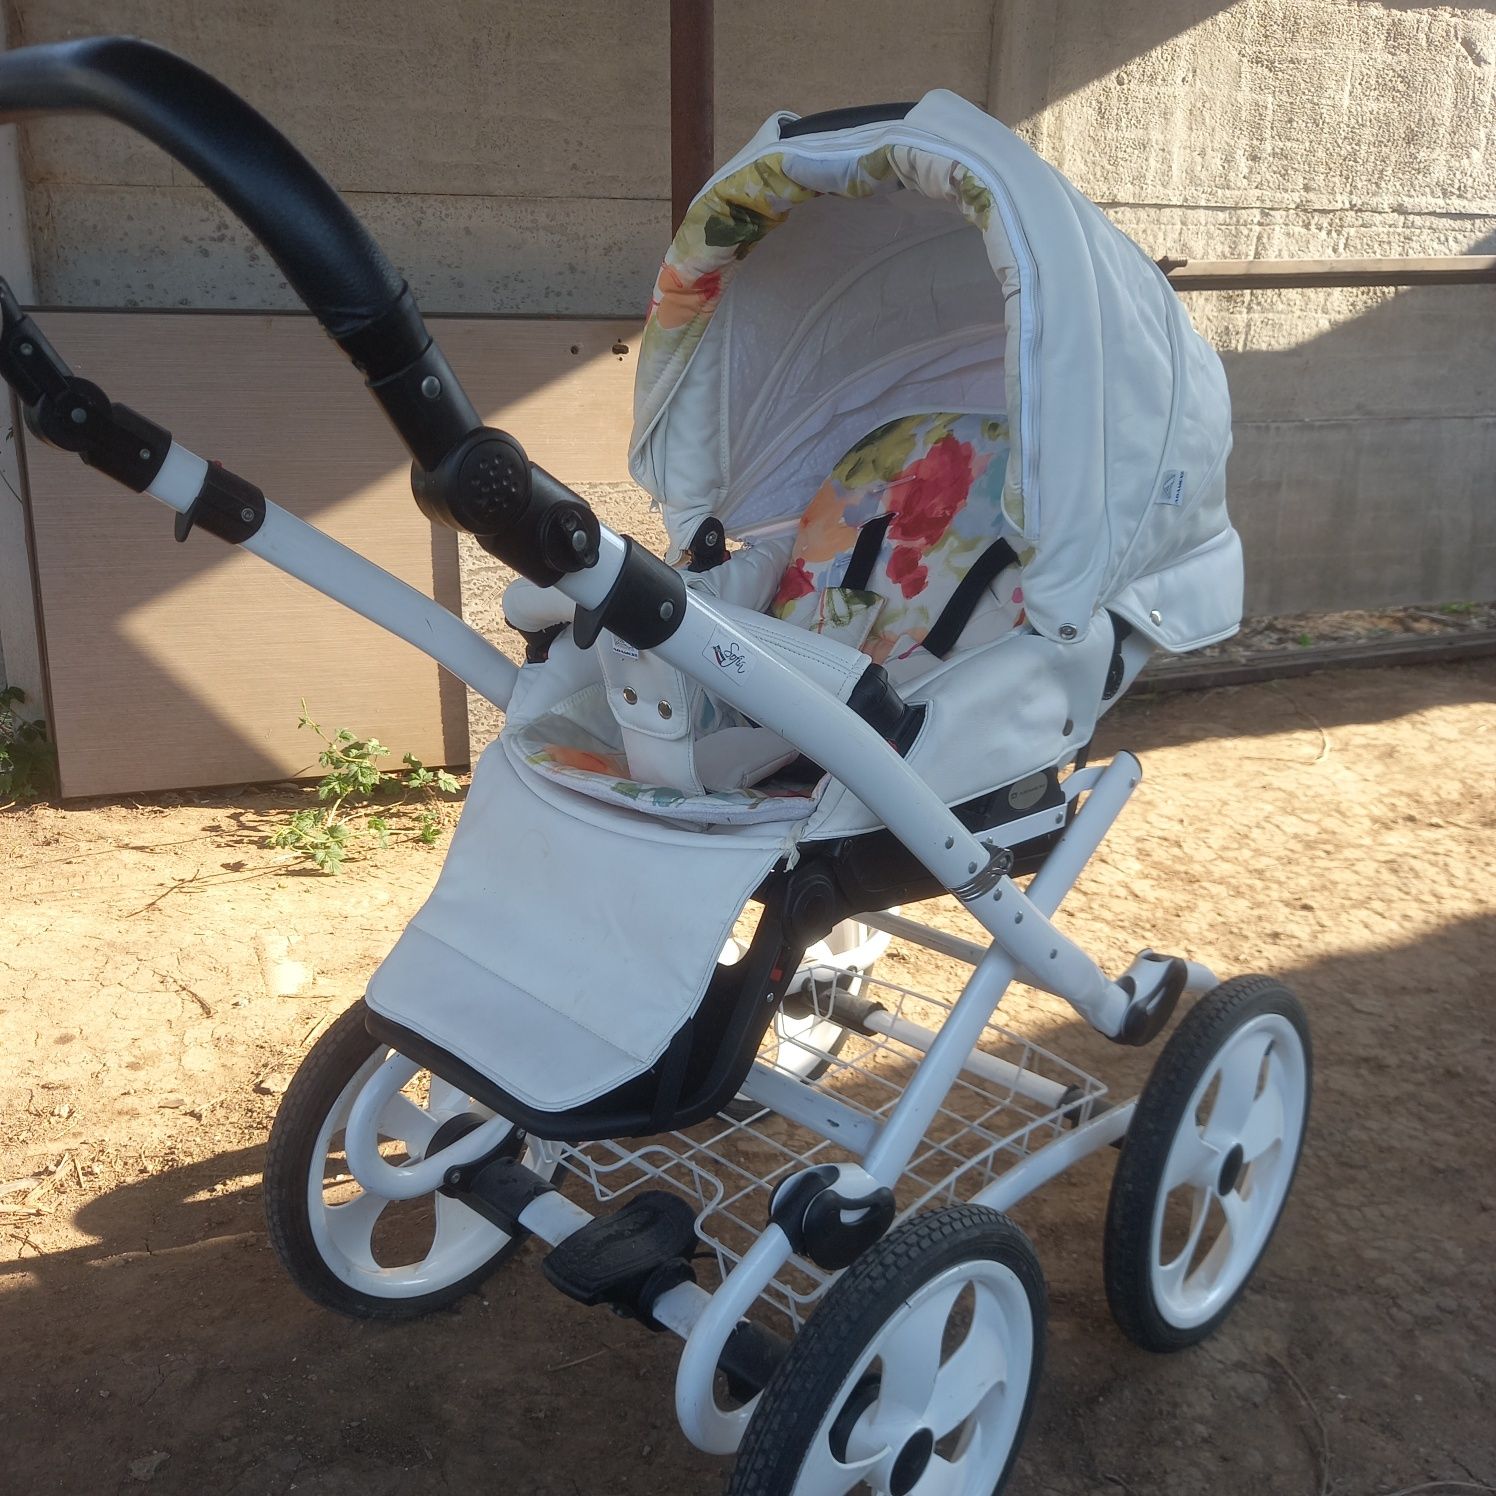 Детская коляска для новорожденного 2 в 1 Adamex Sofia 50% кожа